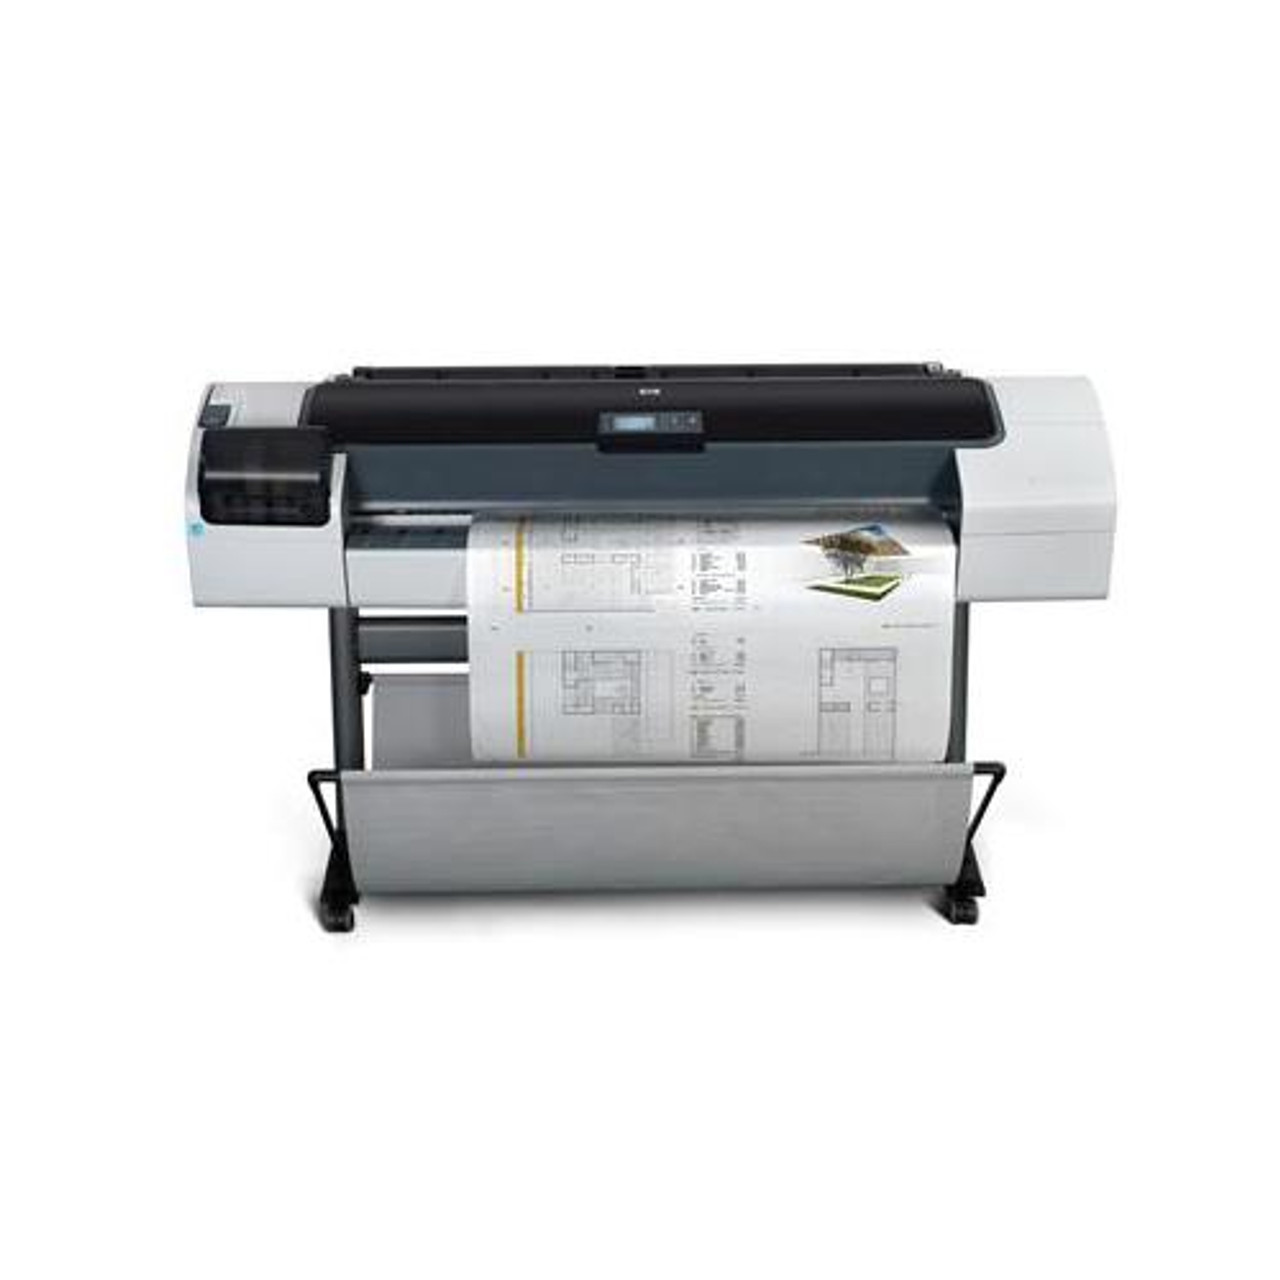 Q6655A - HP DesignJet 70 Color InkJet Printer